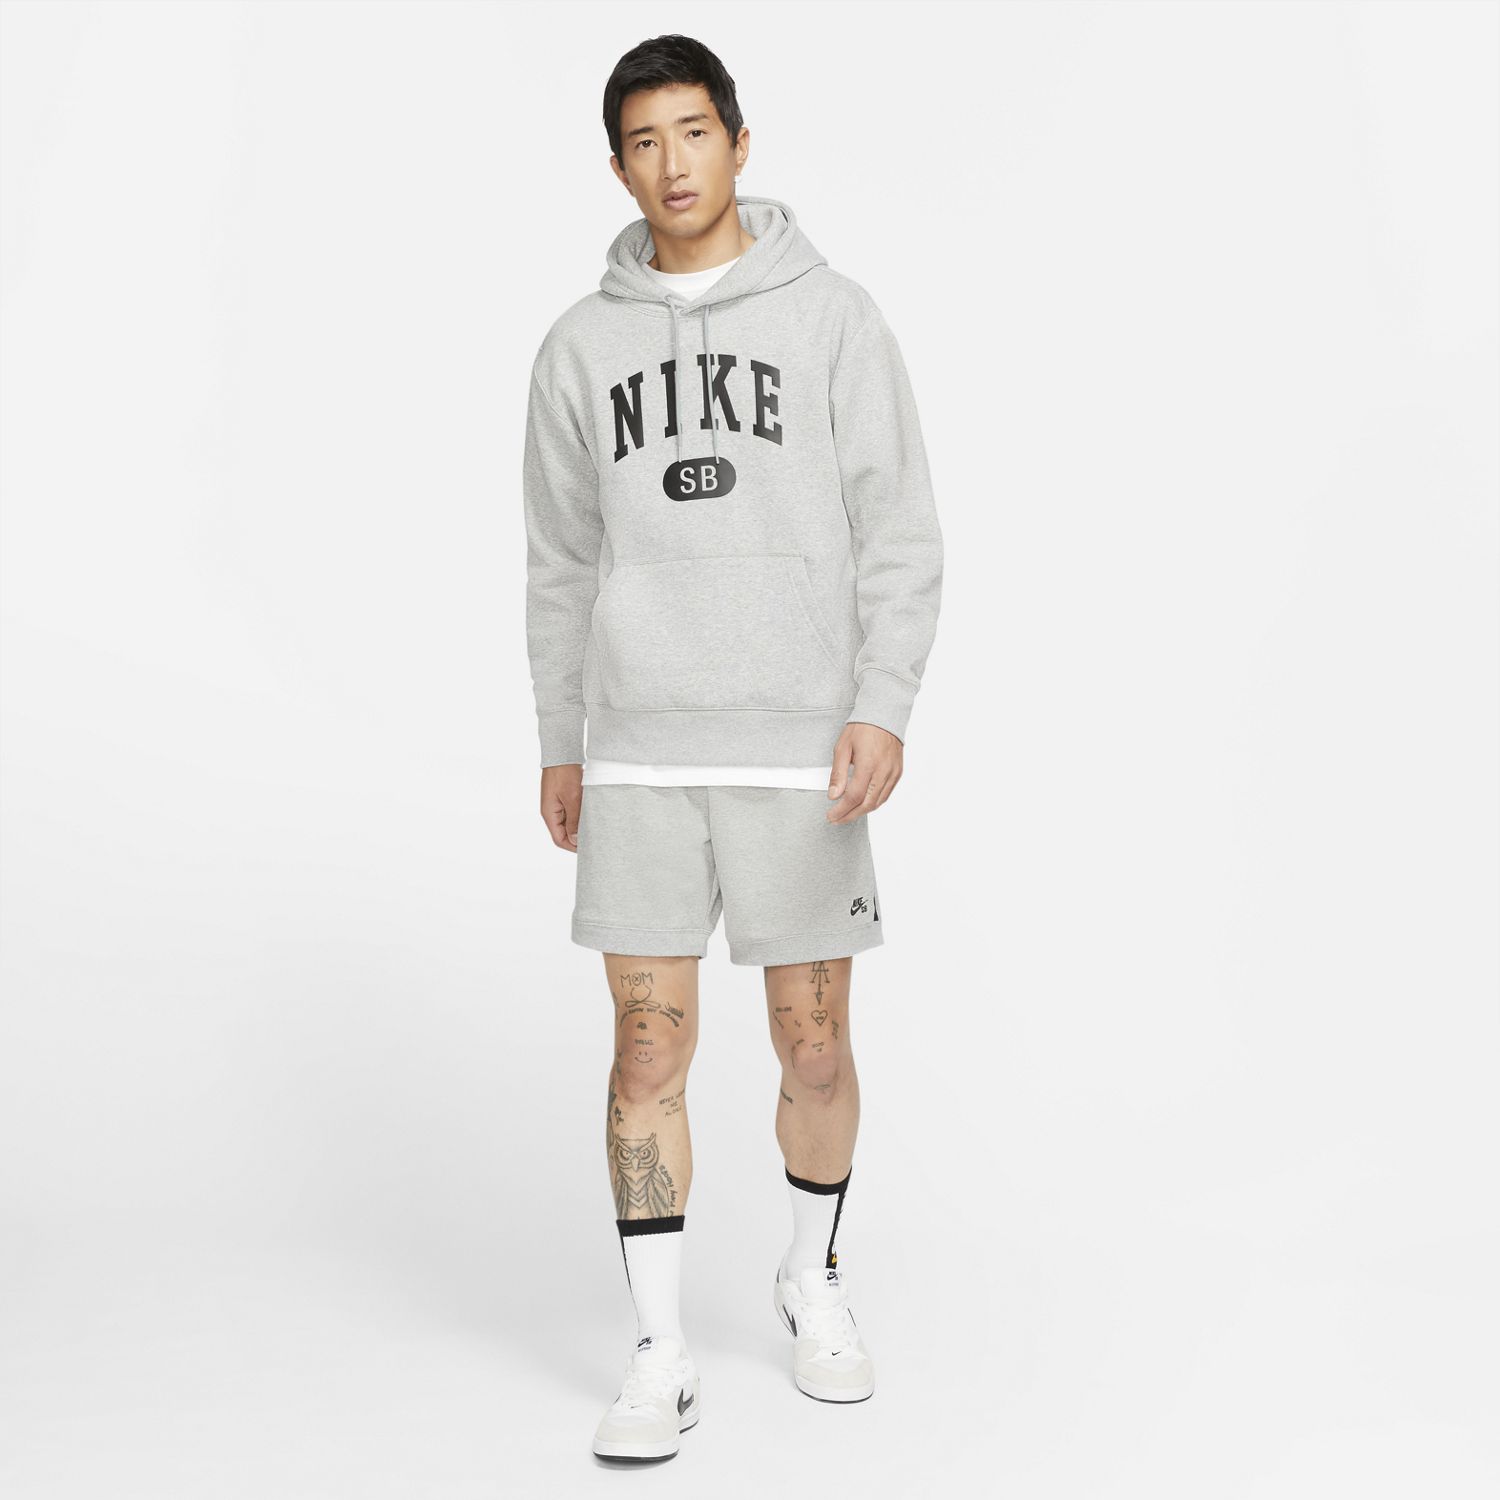 Nike SB Skate Hoodie Grey 06